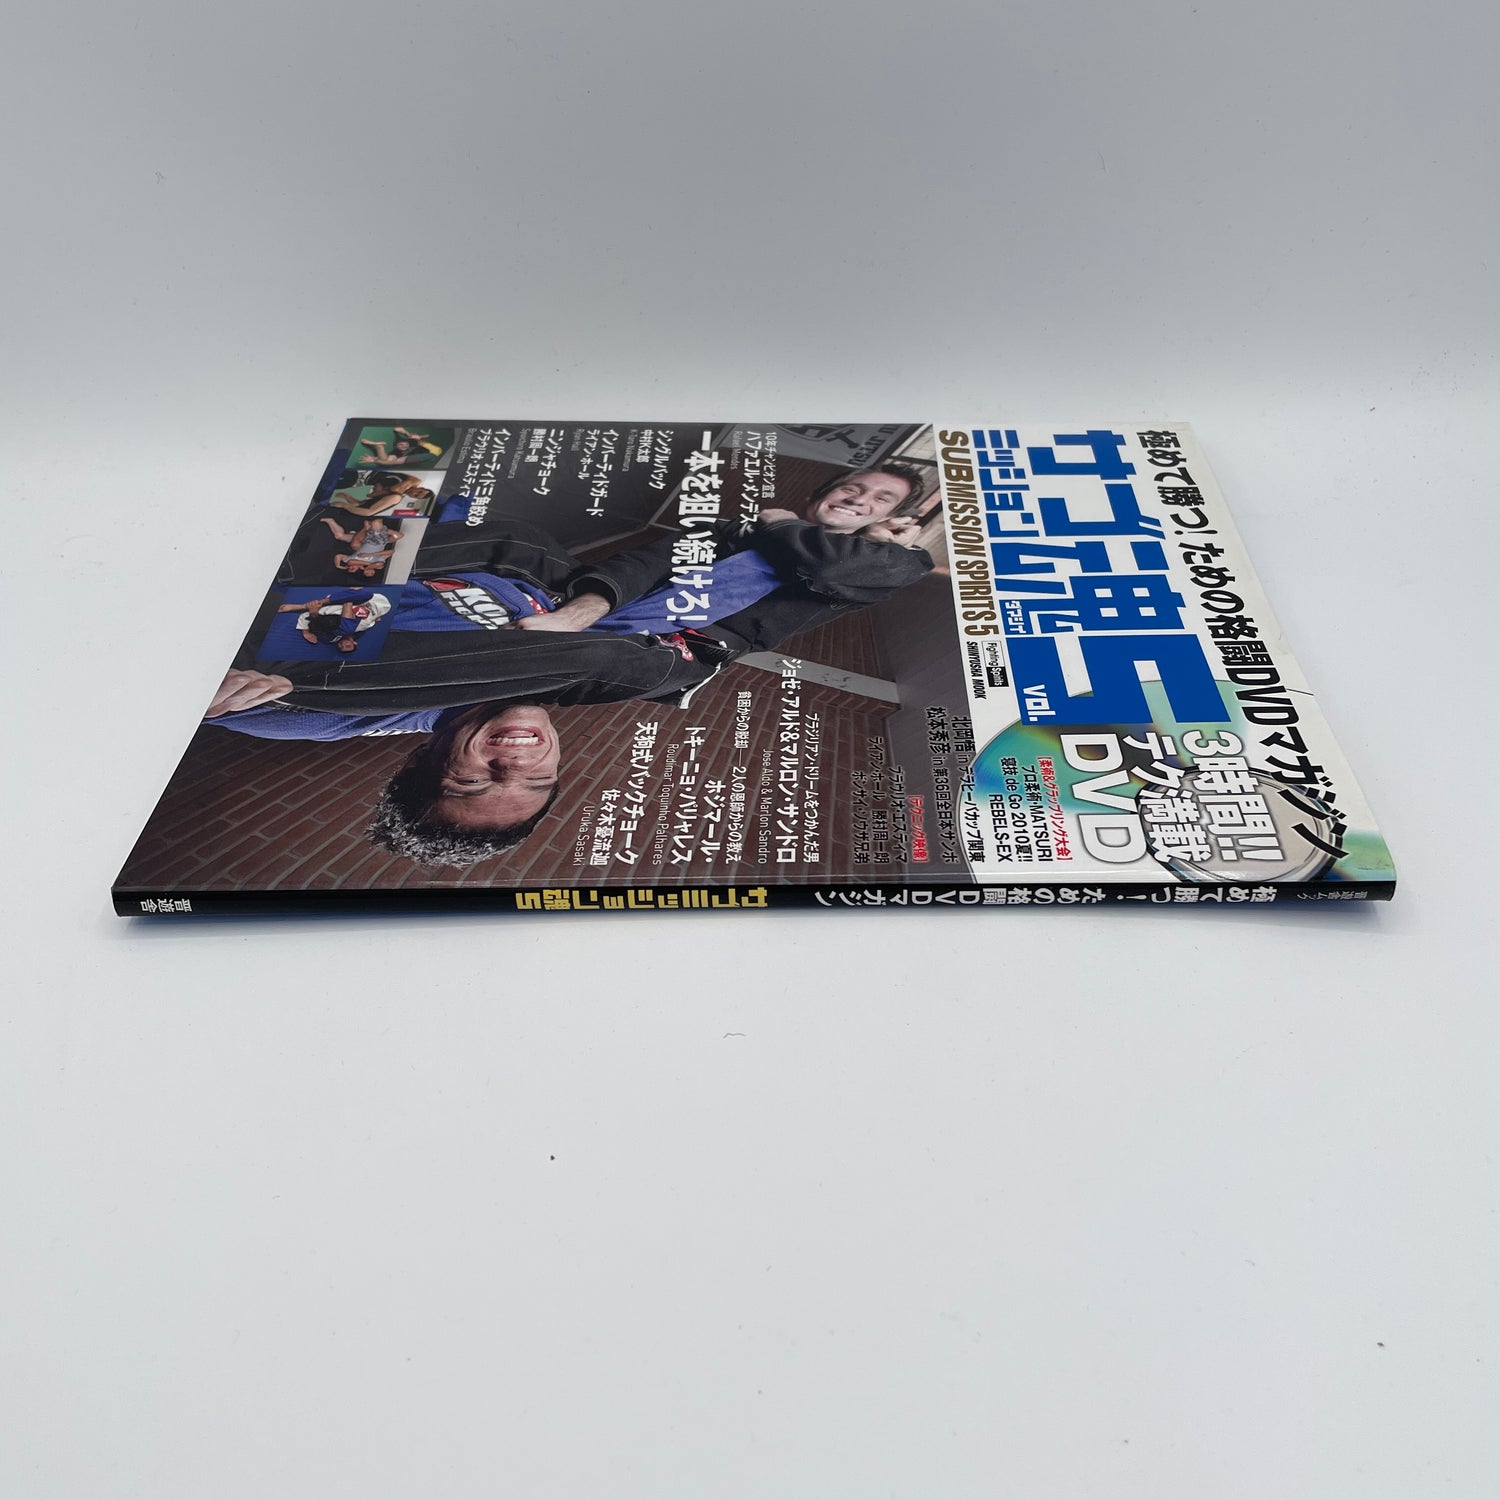 サブミッション スピリッツ Vol 5 書籍&DVD